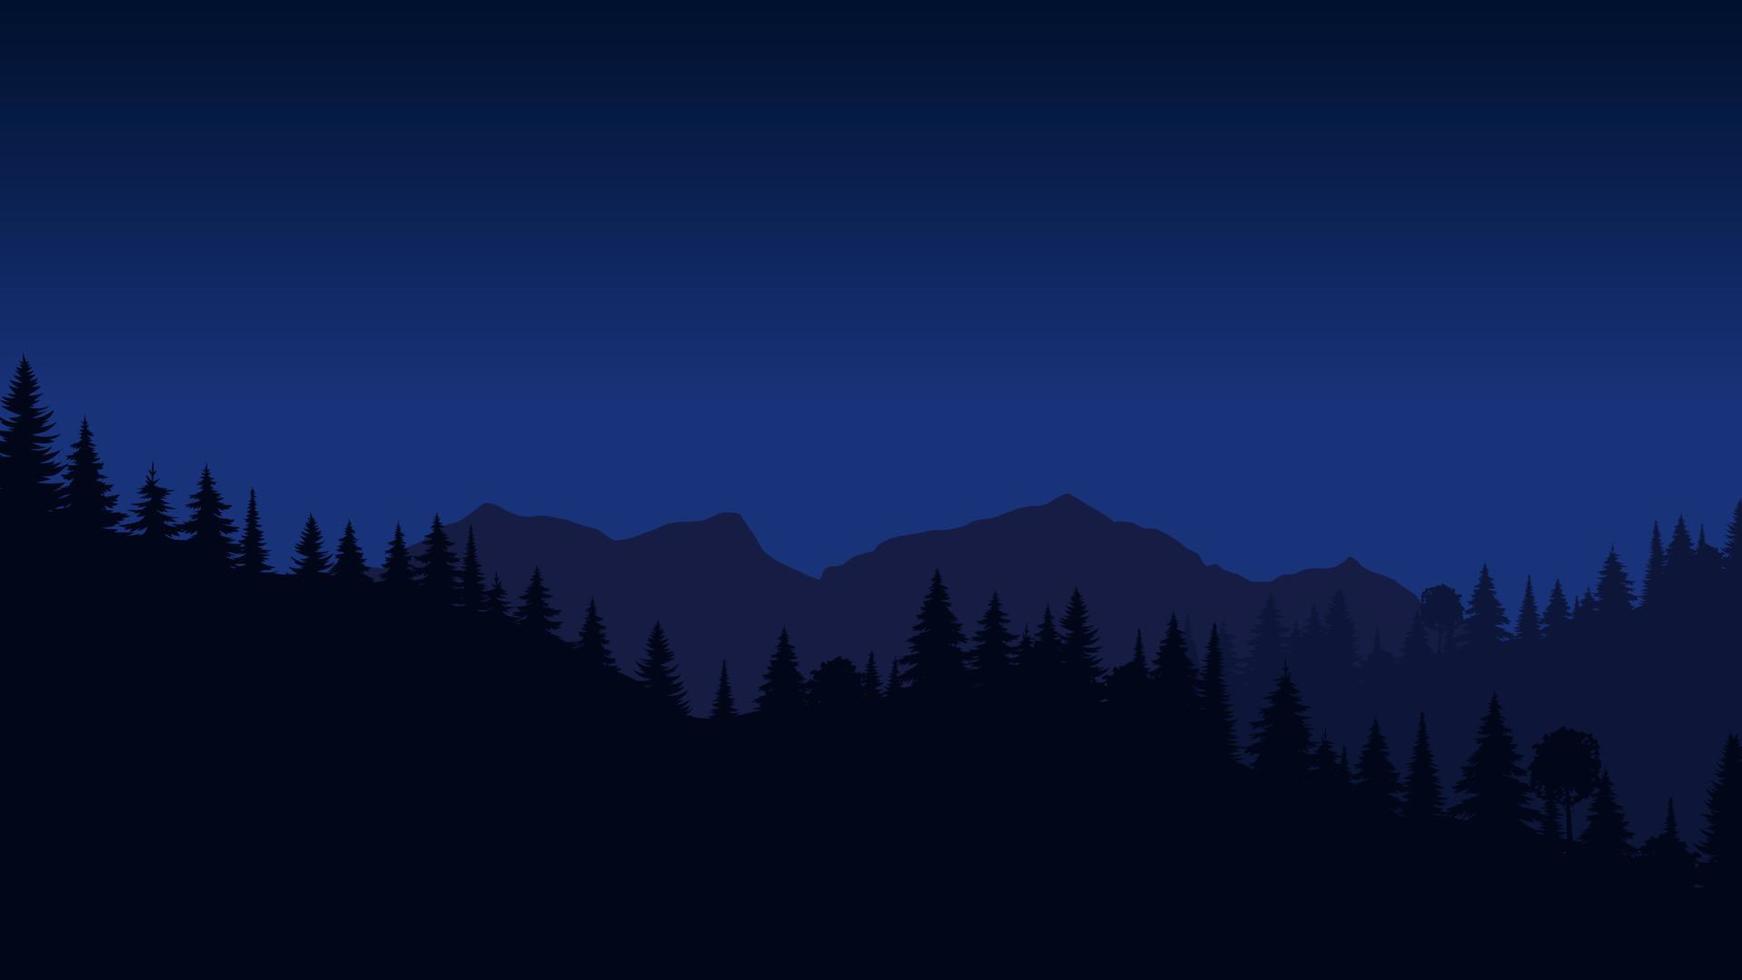 paisaje de silueta con niebla, bosque, pinos, montañas. ilustración de vista nocturna, niebla. azul marino. bueno para papel tapiz, fondo, banner web, portada, afiche. vector